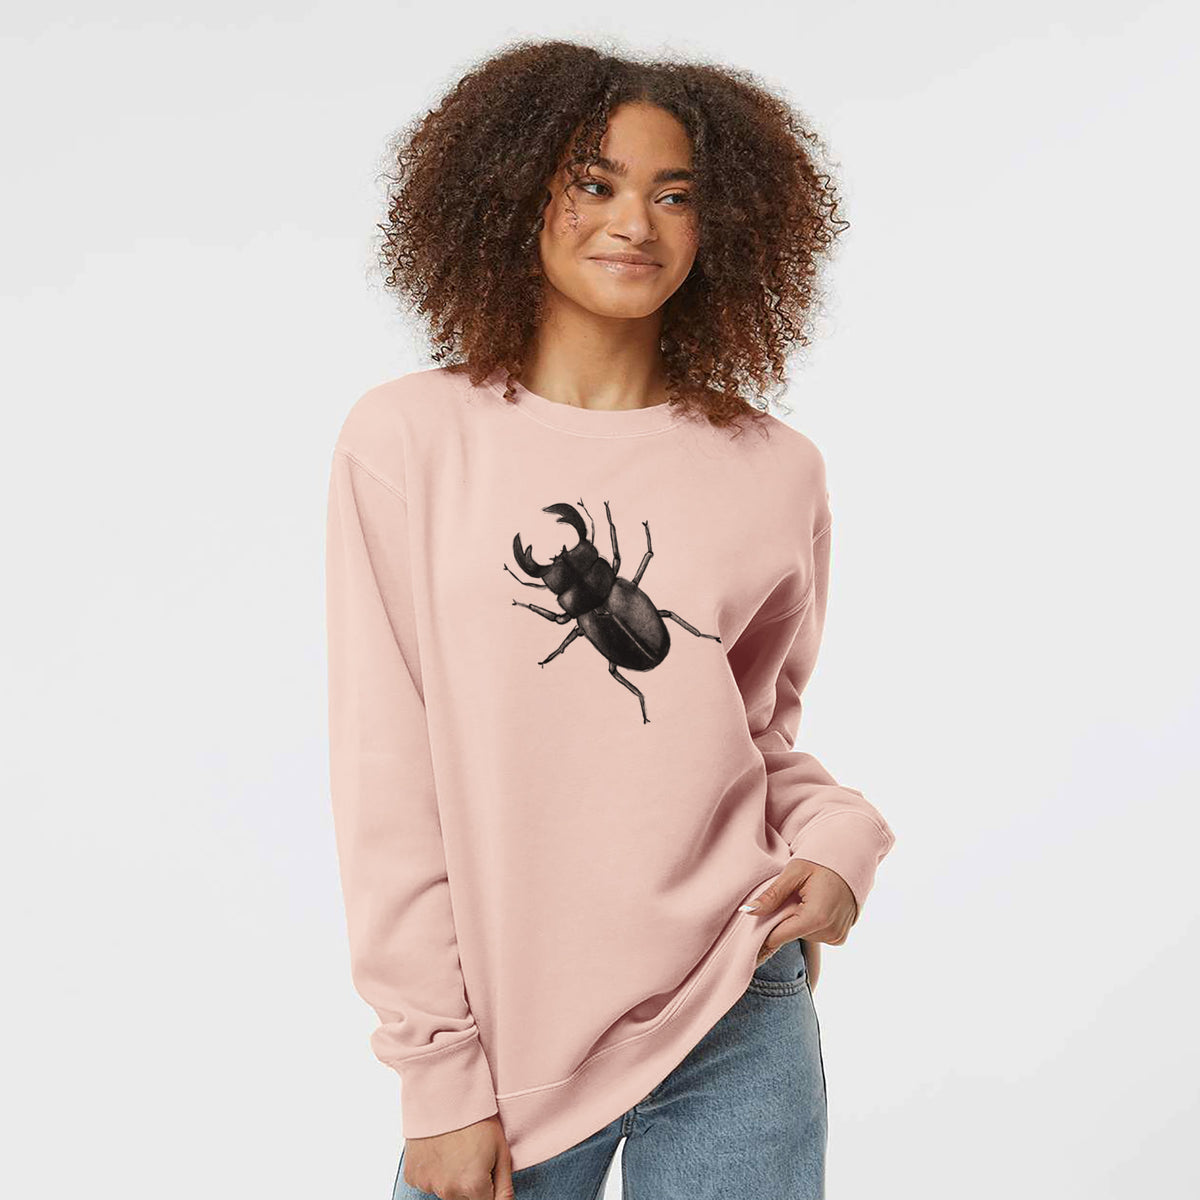 Dorcus titanus - Giant Stag Beetle - Unisex Pigment Dyed Crew Sweatshirt